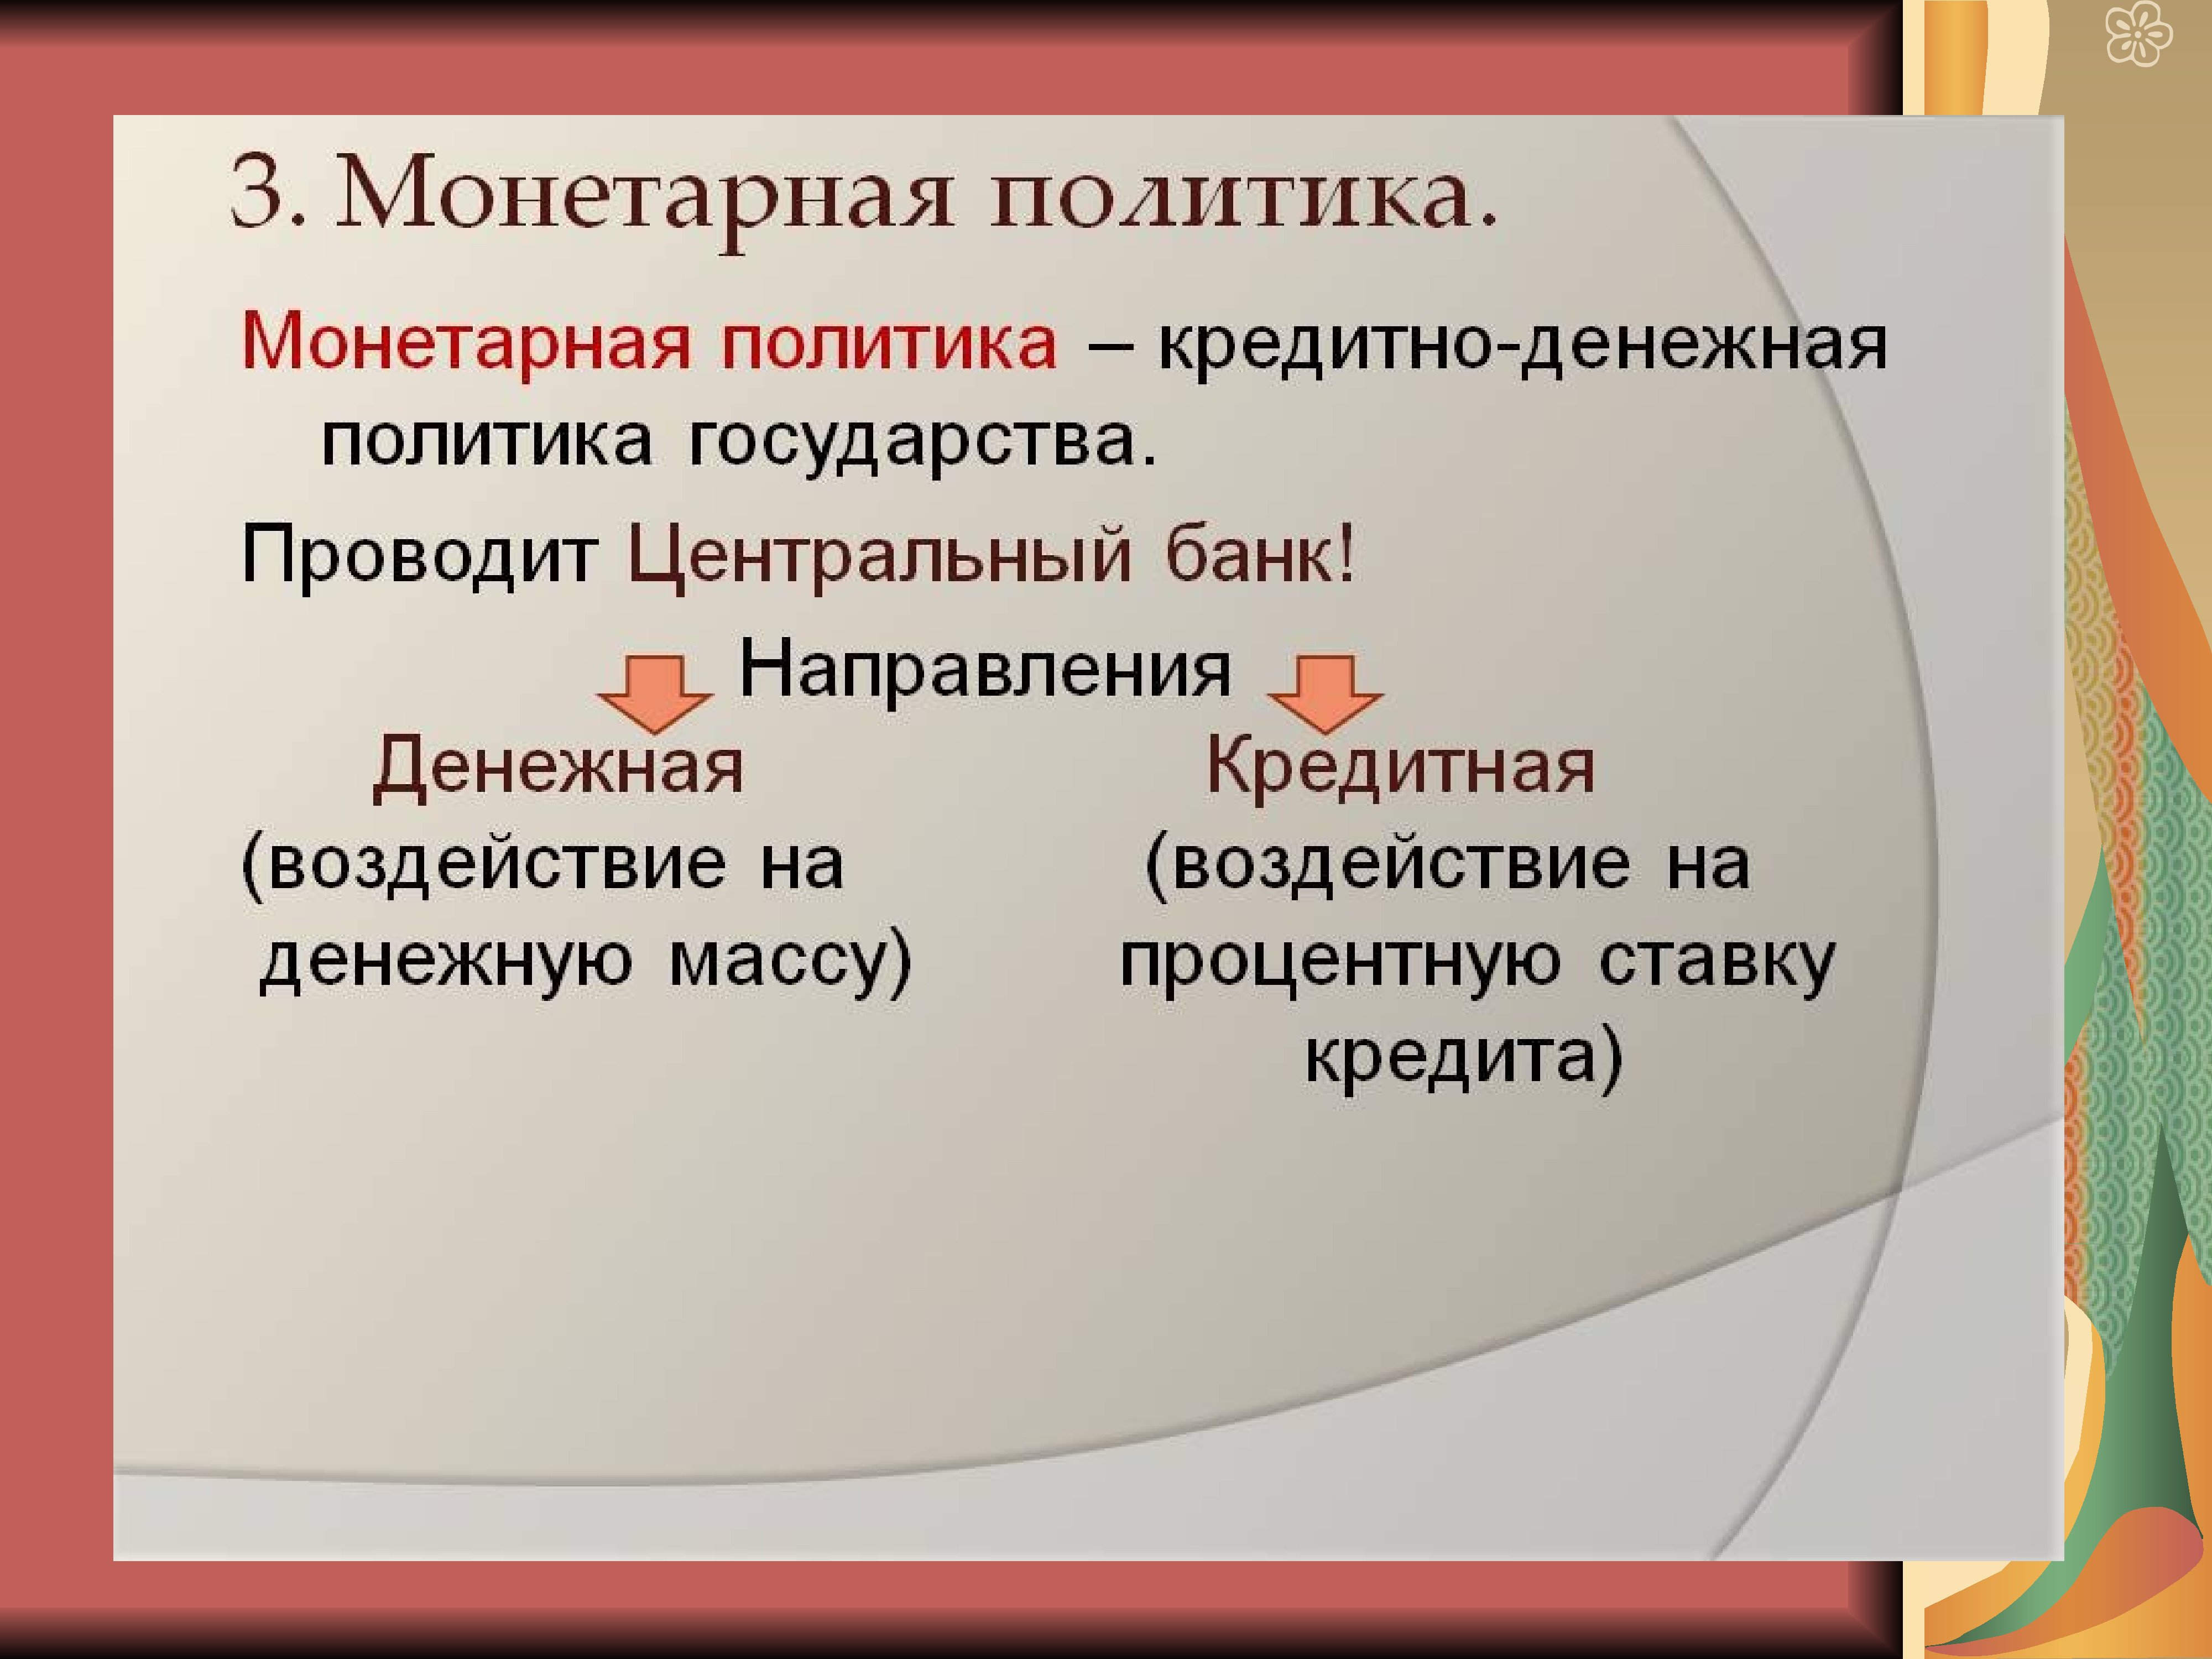 Монетарная политика банка россии обществознание. Монетарная политика. Монетарная денежная политика. Монетарная политика государства. Мумунитарная политика.